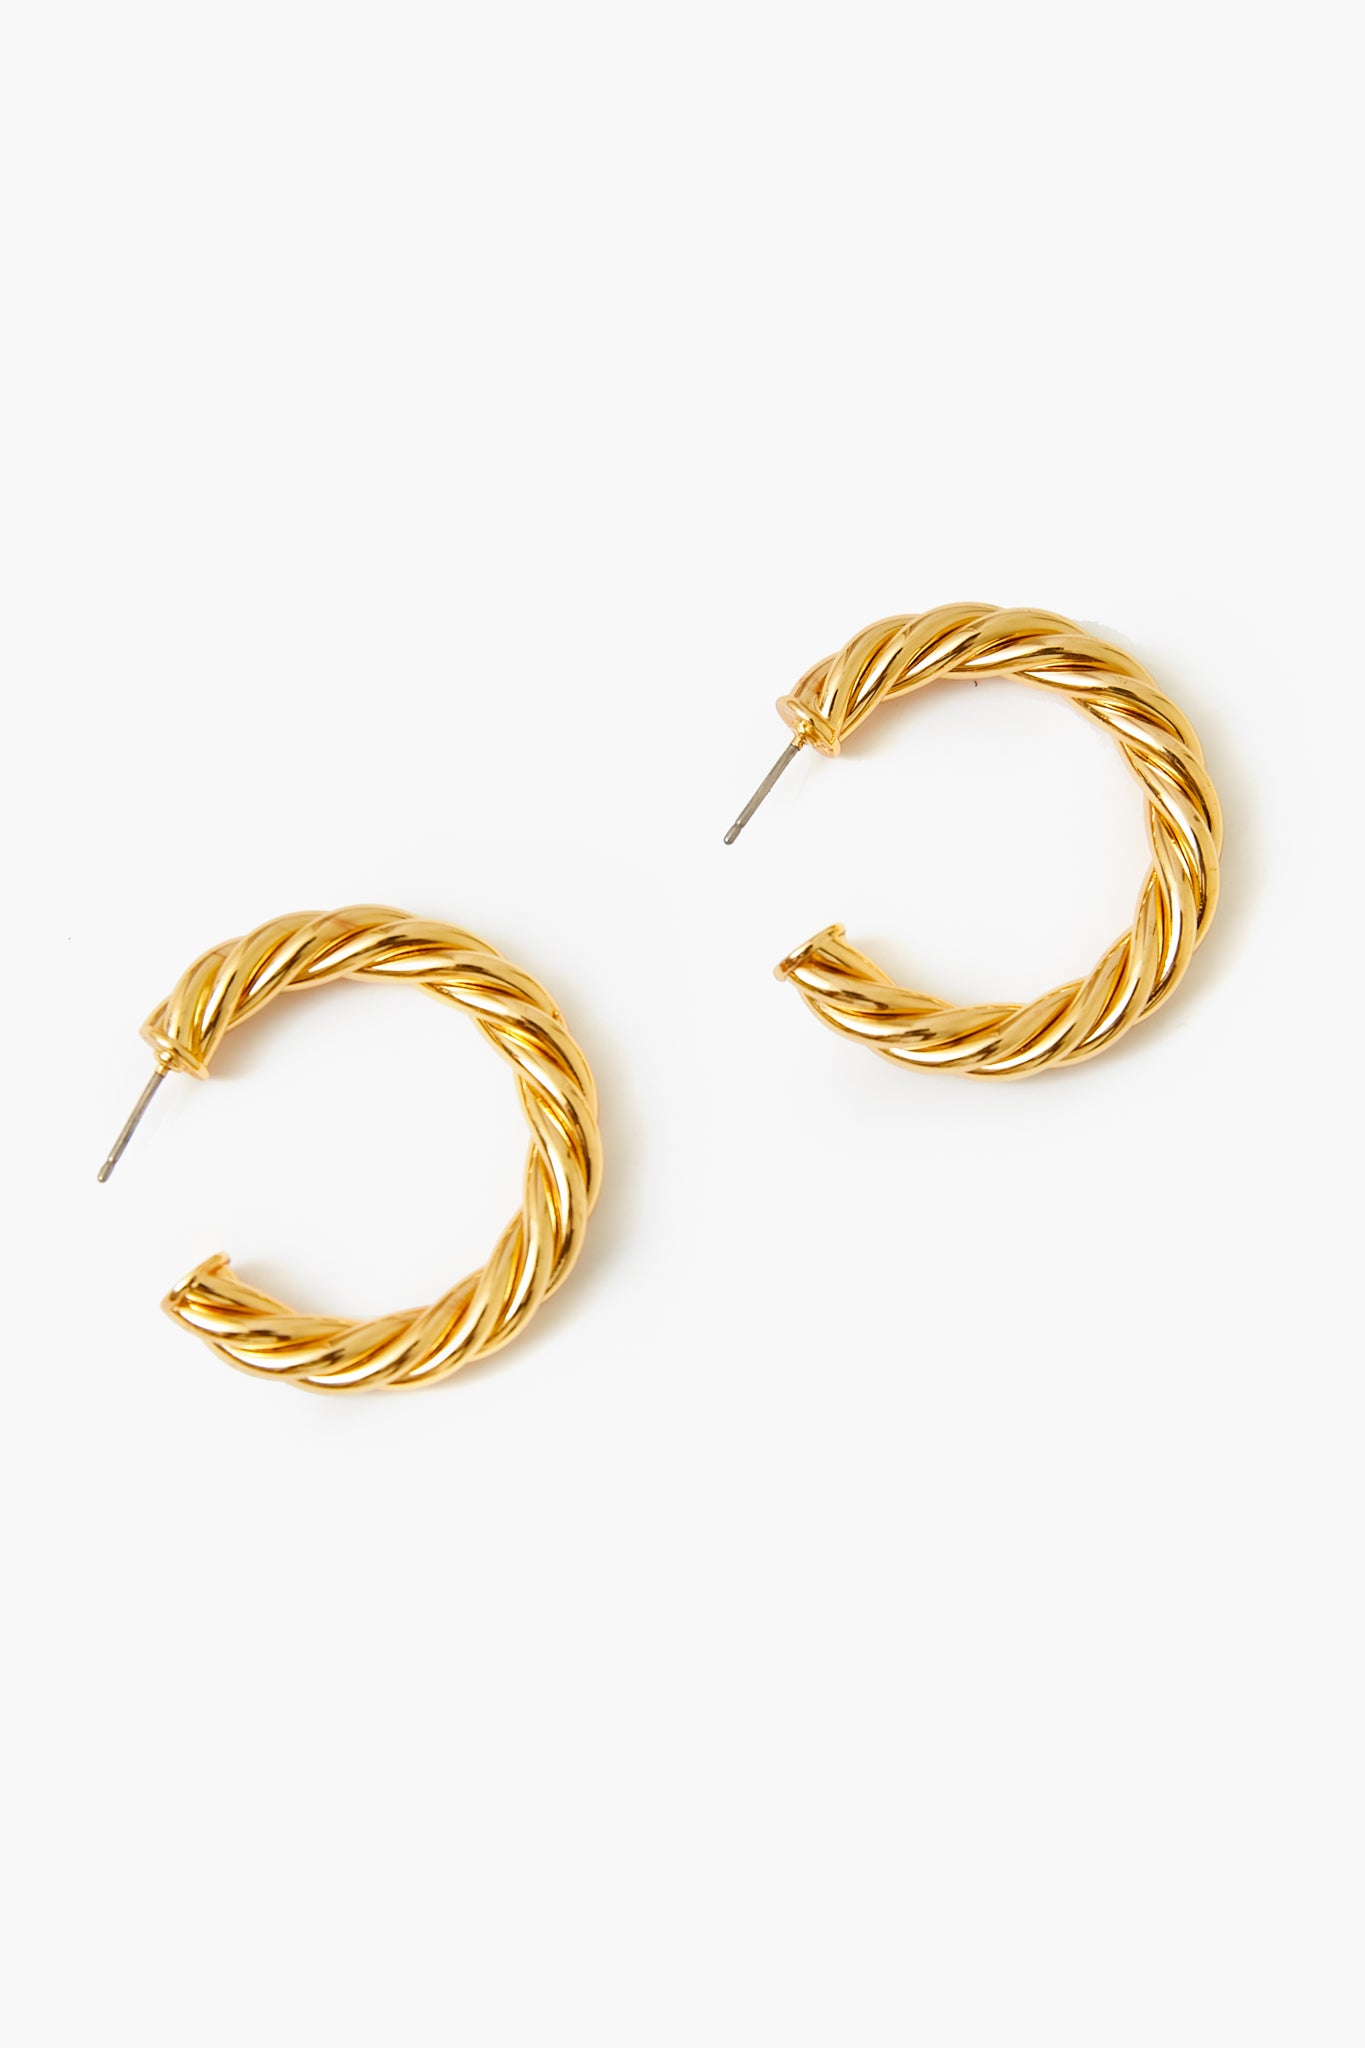 Gold French Twist Large Hoop Earrings | Tuckernuck Jewelry